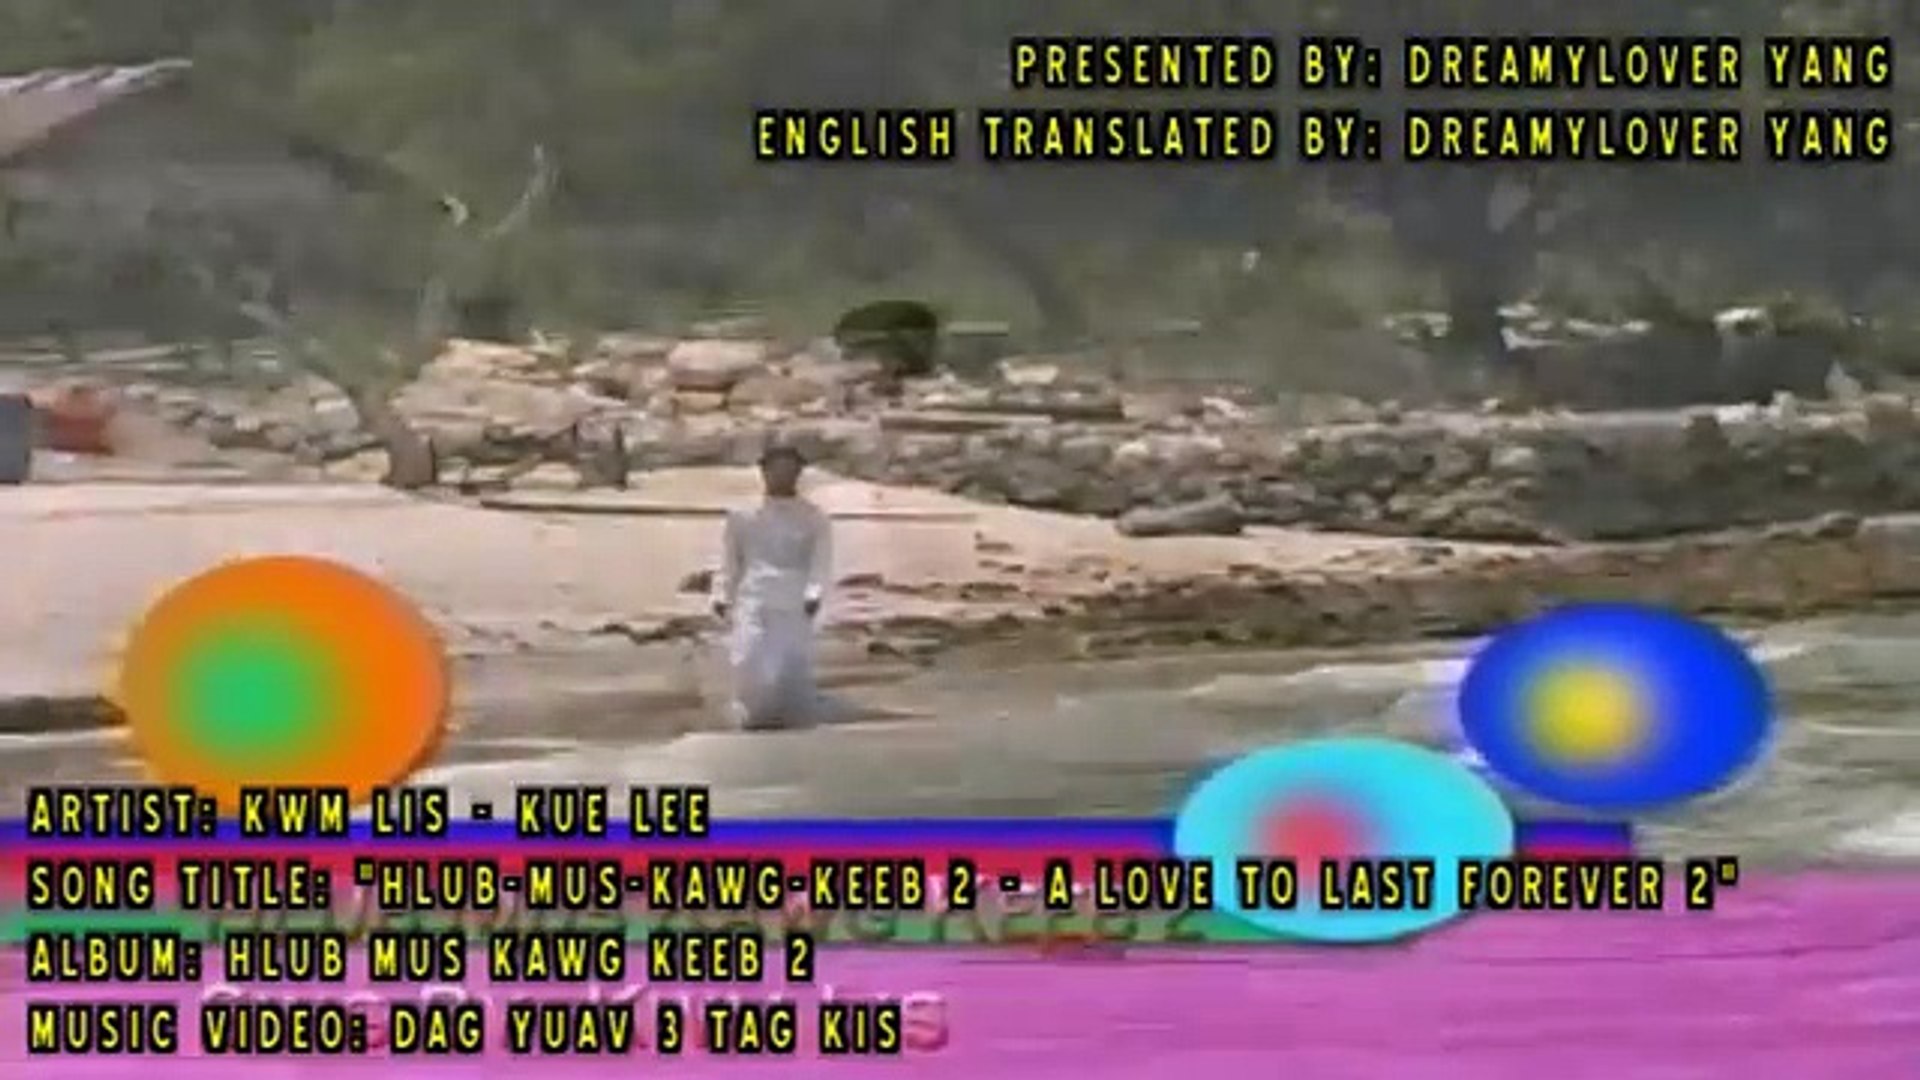 Kwm Lis Music Video- 'HLUB-MUS-KAWG-KEEB 2'  With Hmong Lyrics And English Translations  [